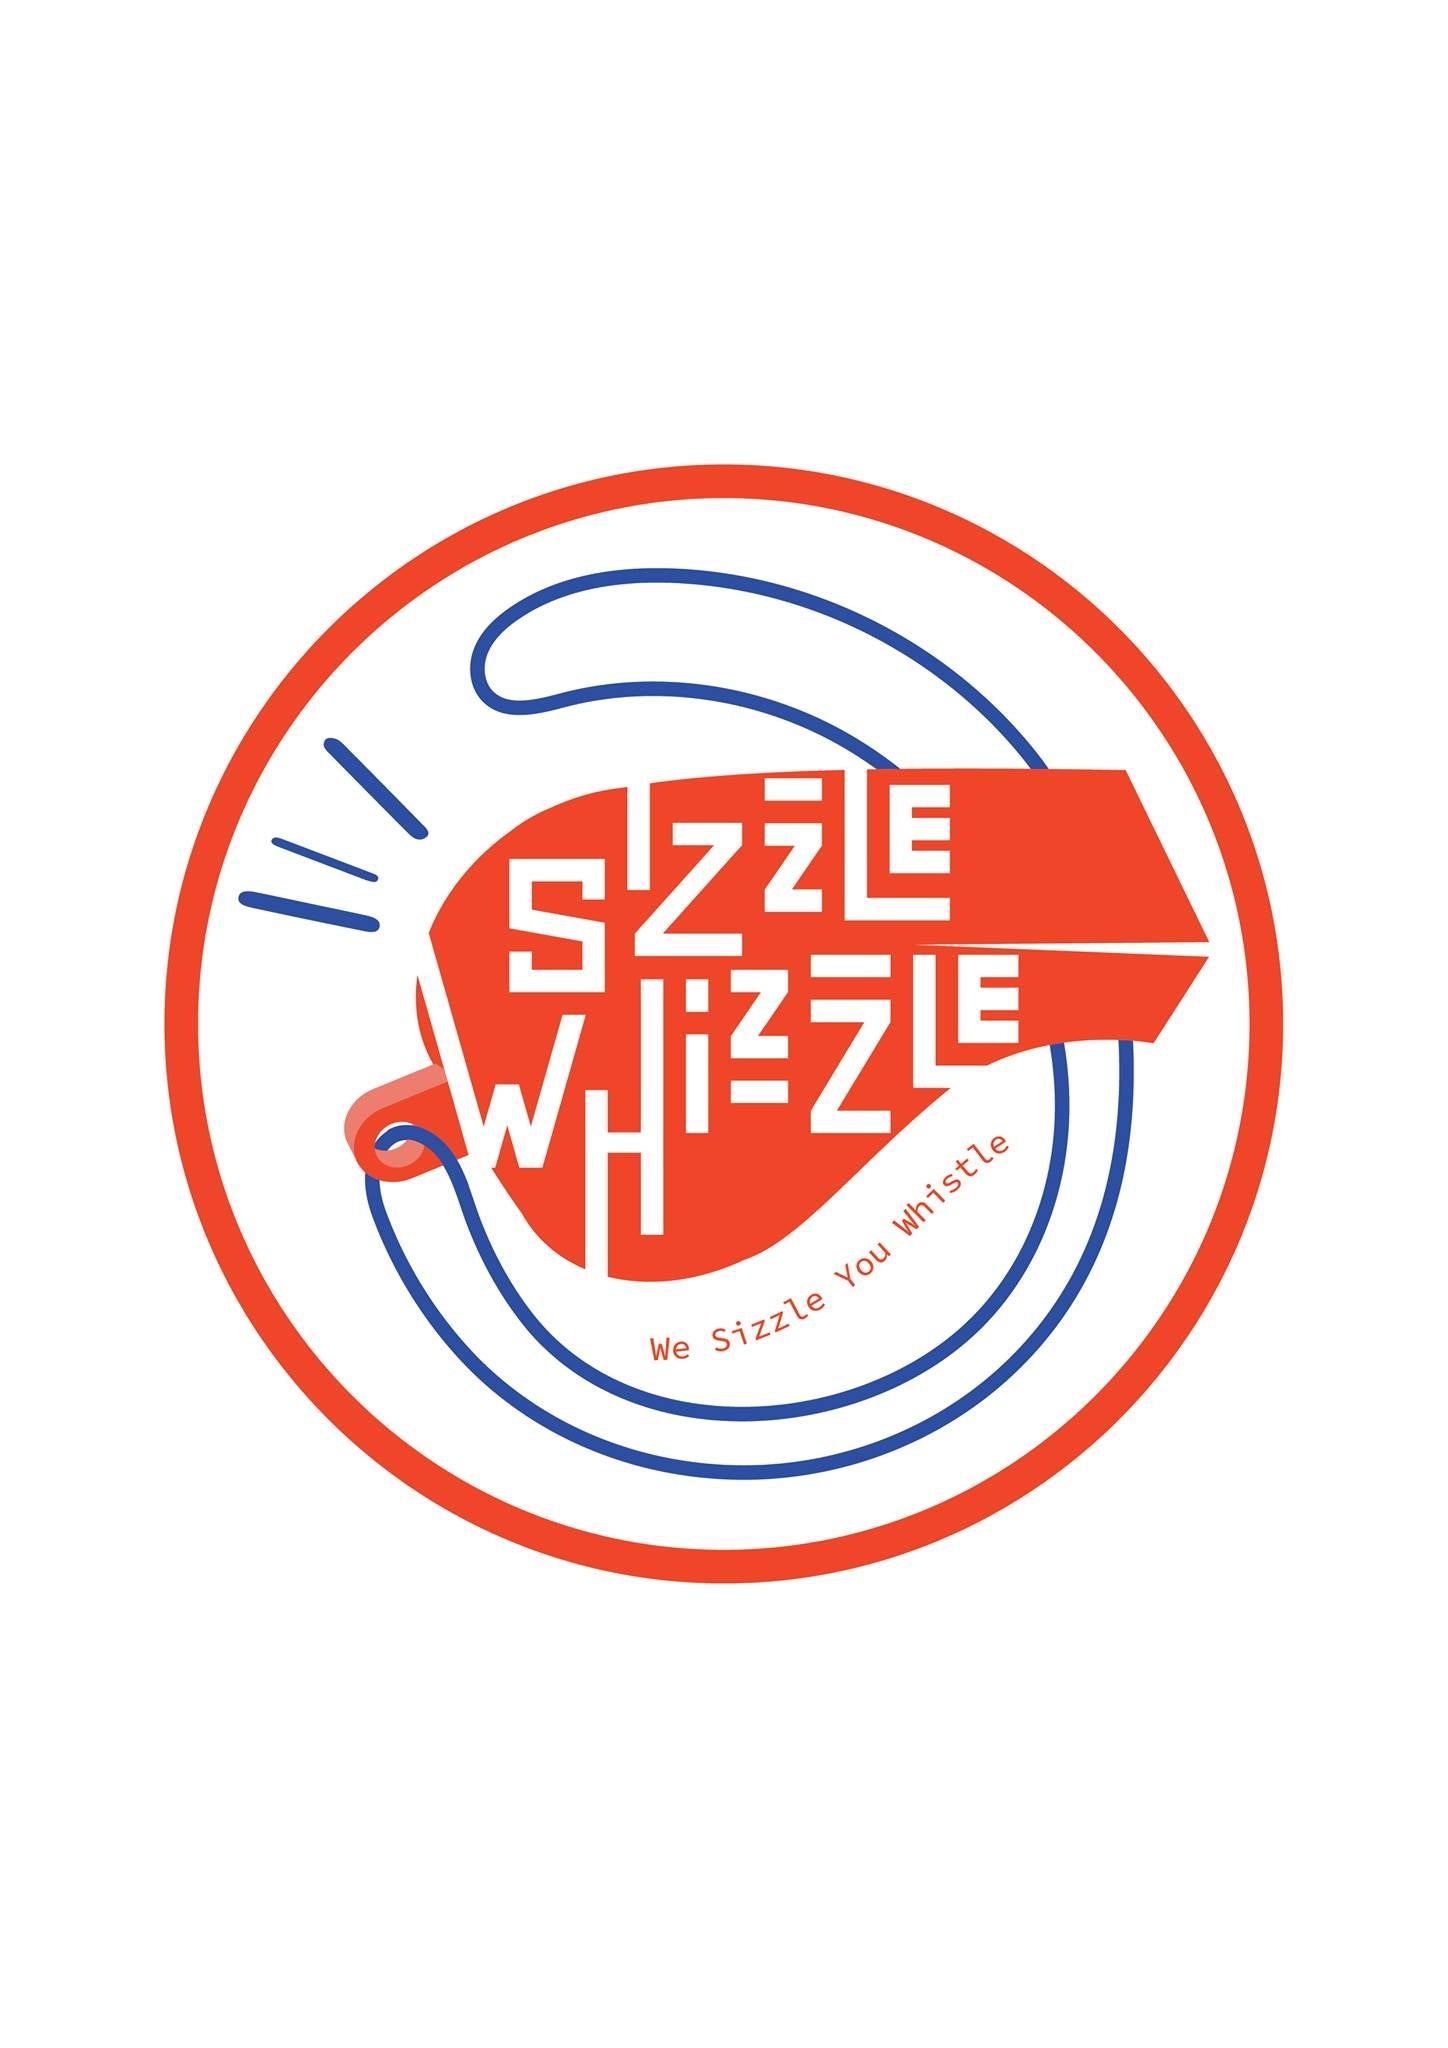 Sizzle Whizzle